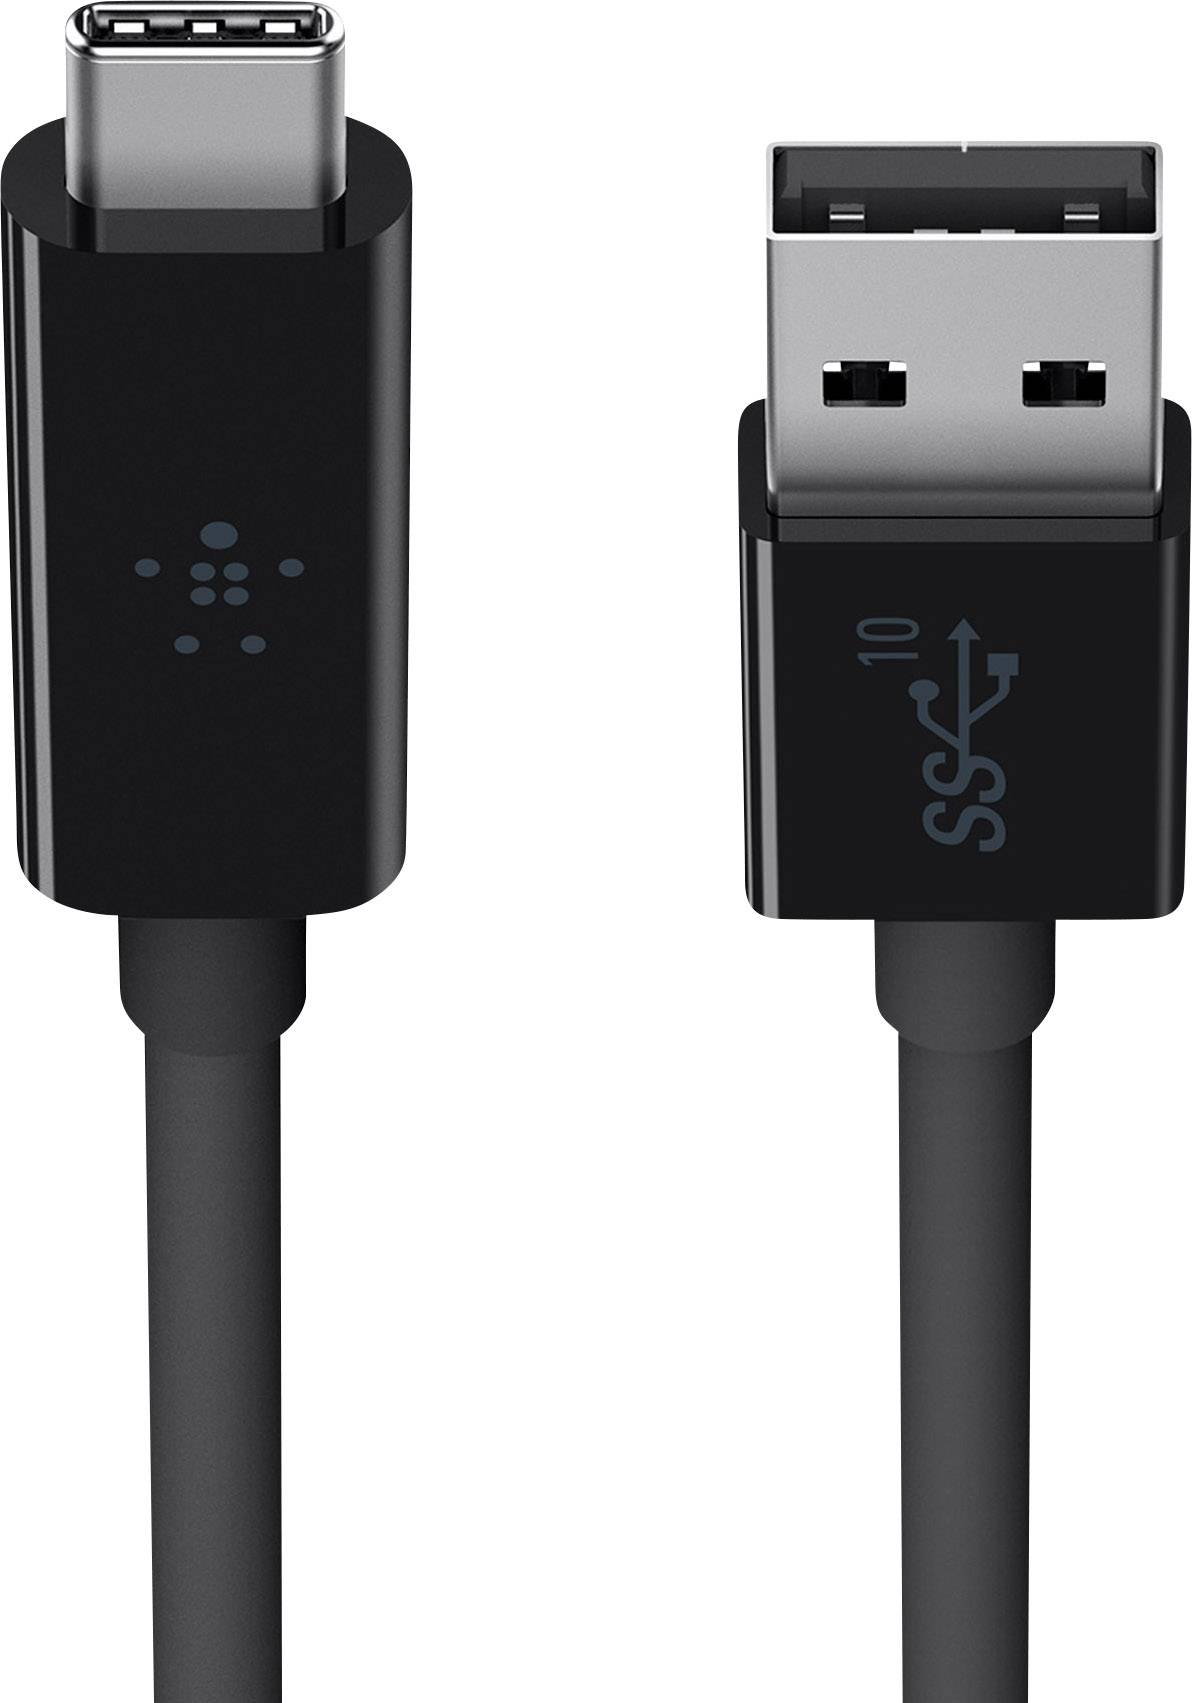 Belkin USB 3.1 SuperSpeed+ Kabel, USB-C auf USB-A, bis zu 10 GBit/s und 3000mA, schwarz, 1m